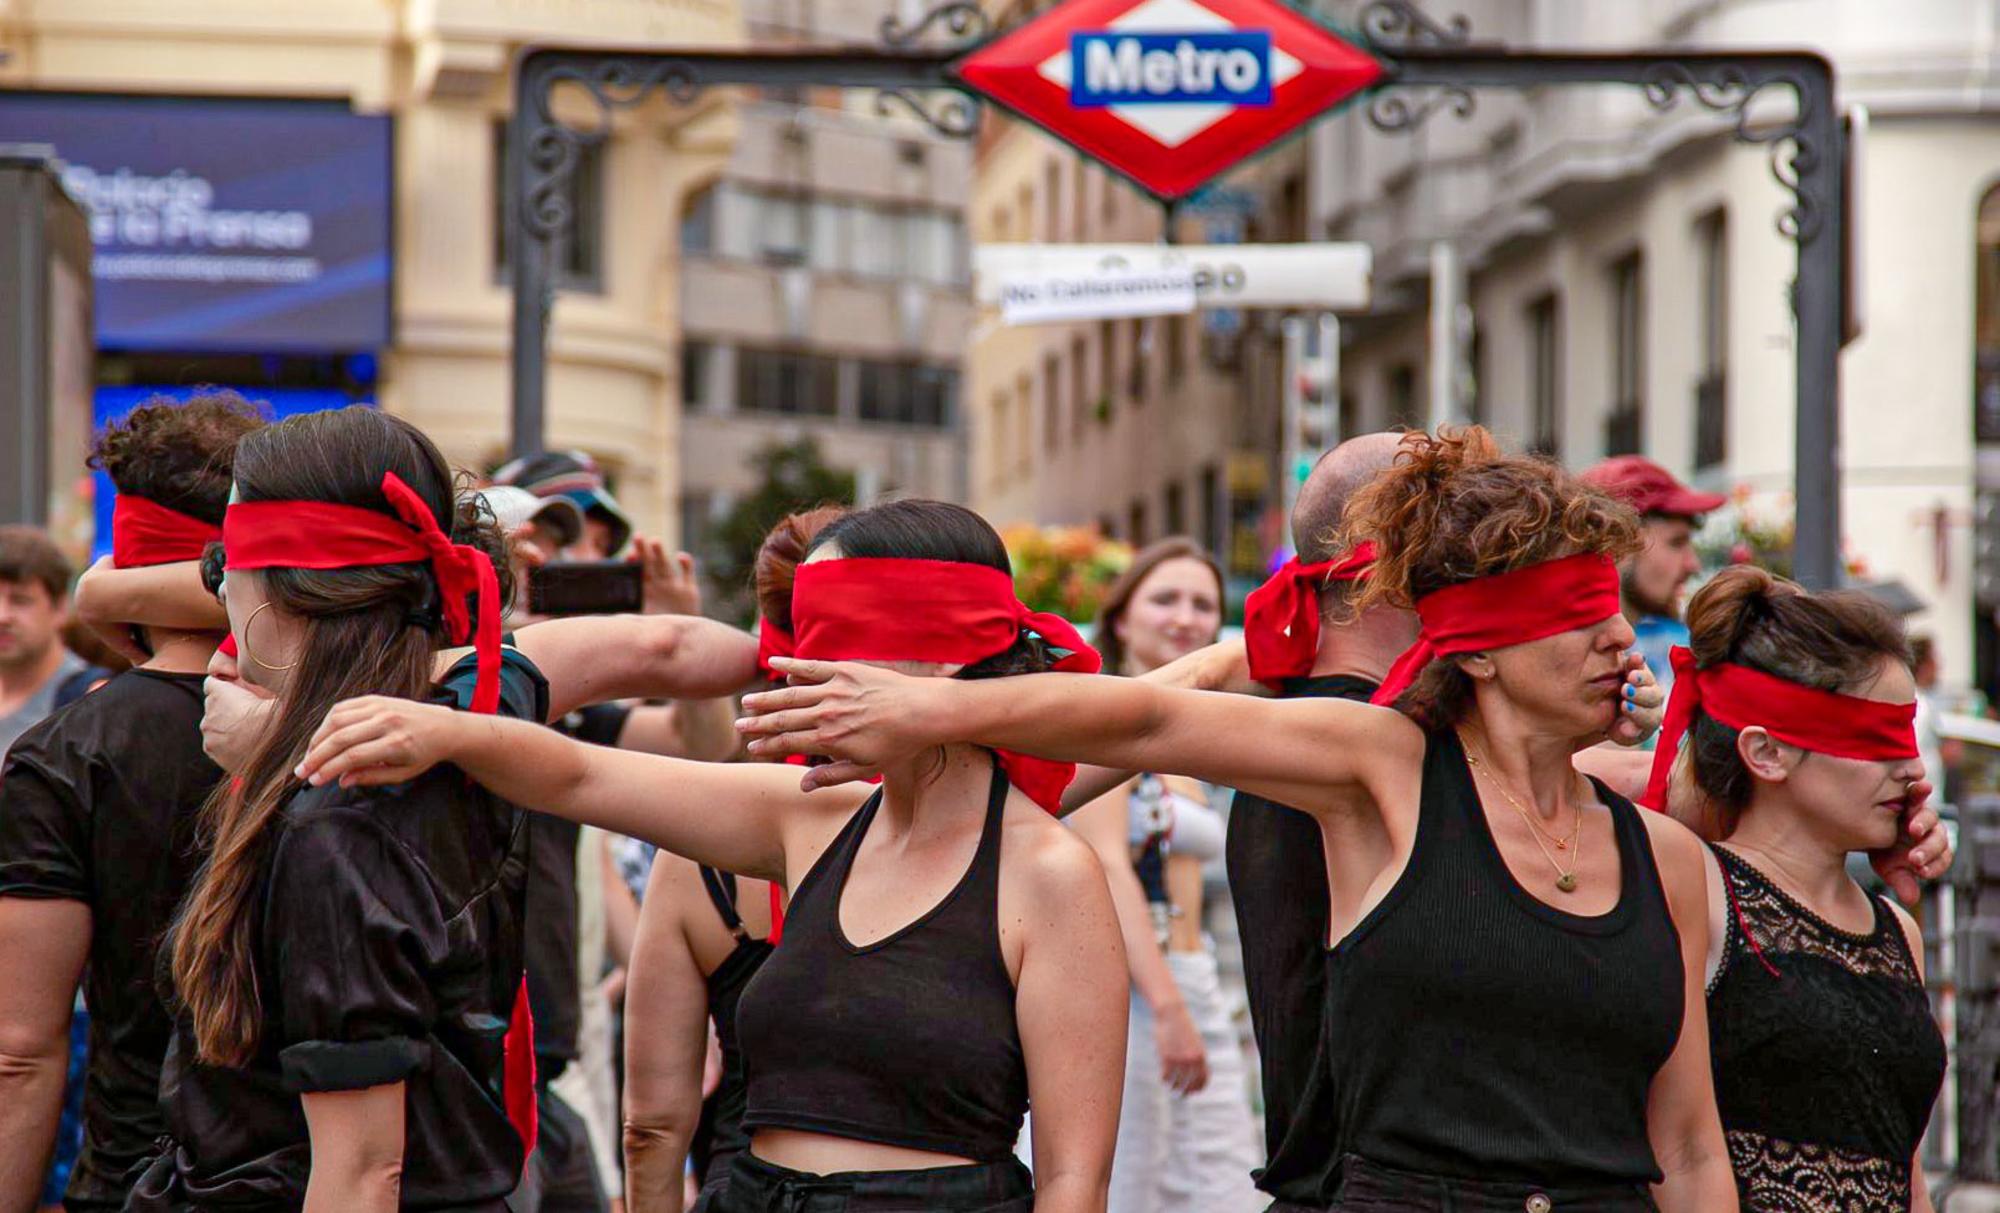 Acción contra la censura realizada en la plaza de Callao (Madrid)